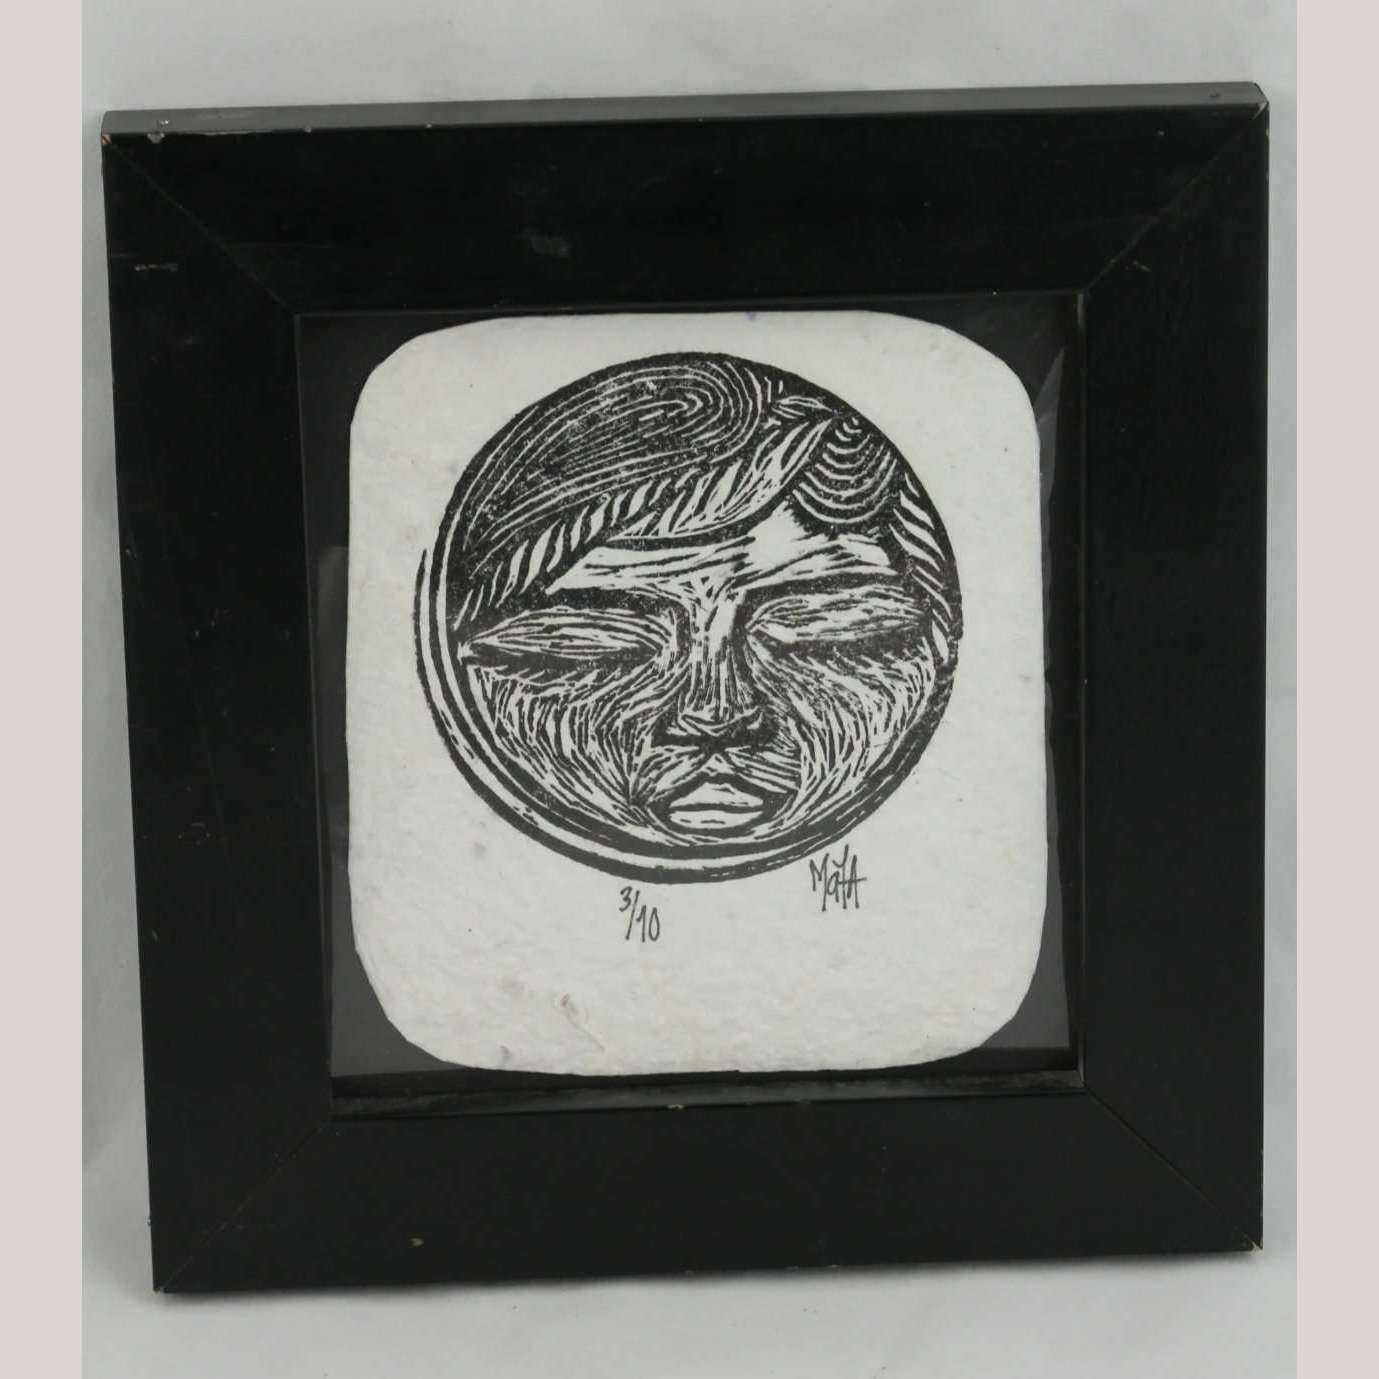 Original Moon Lithograph Mexican Collectible Signed 3/10 Collectible Decor Frame